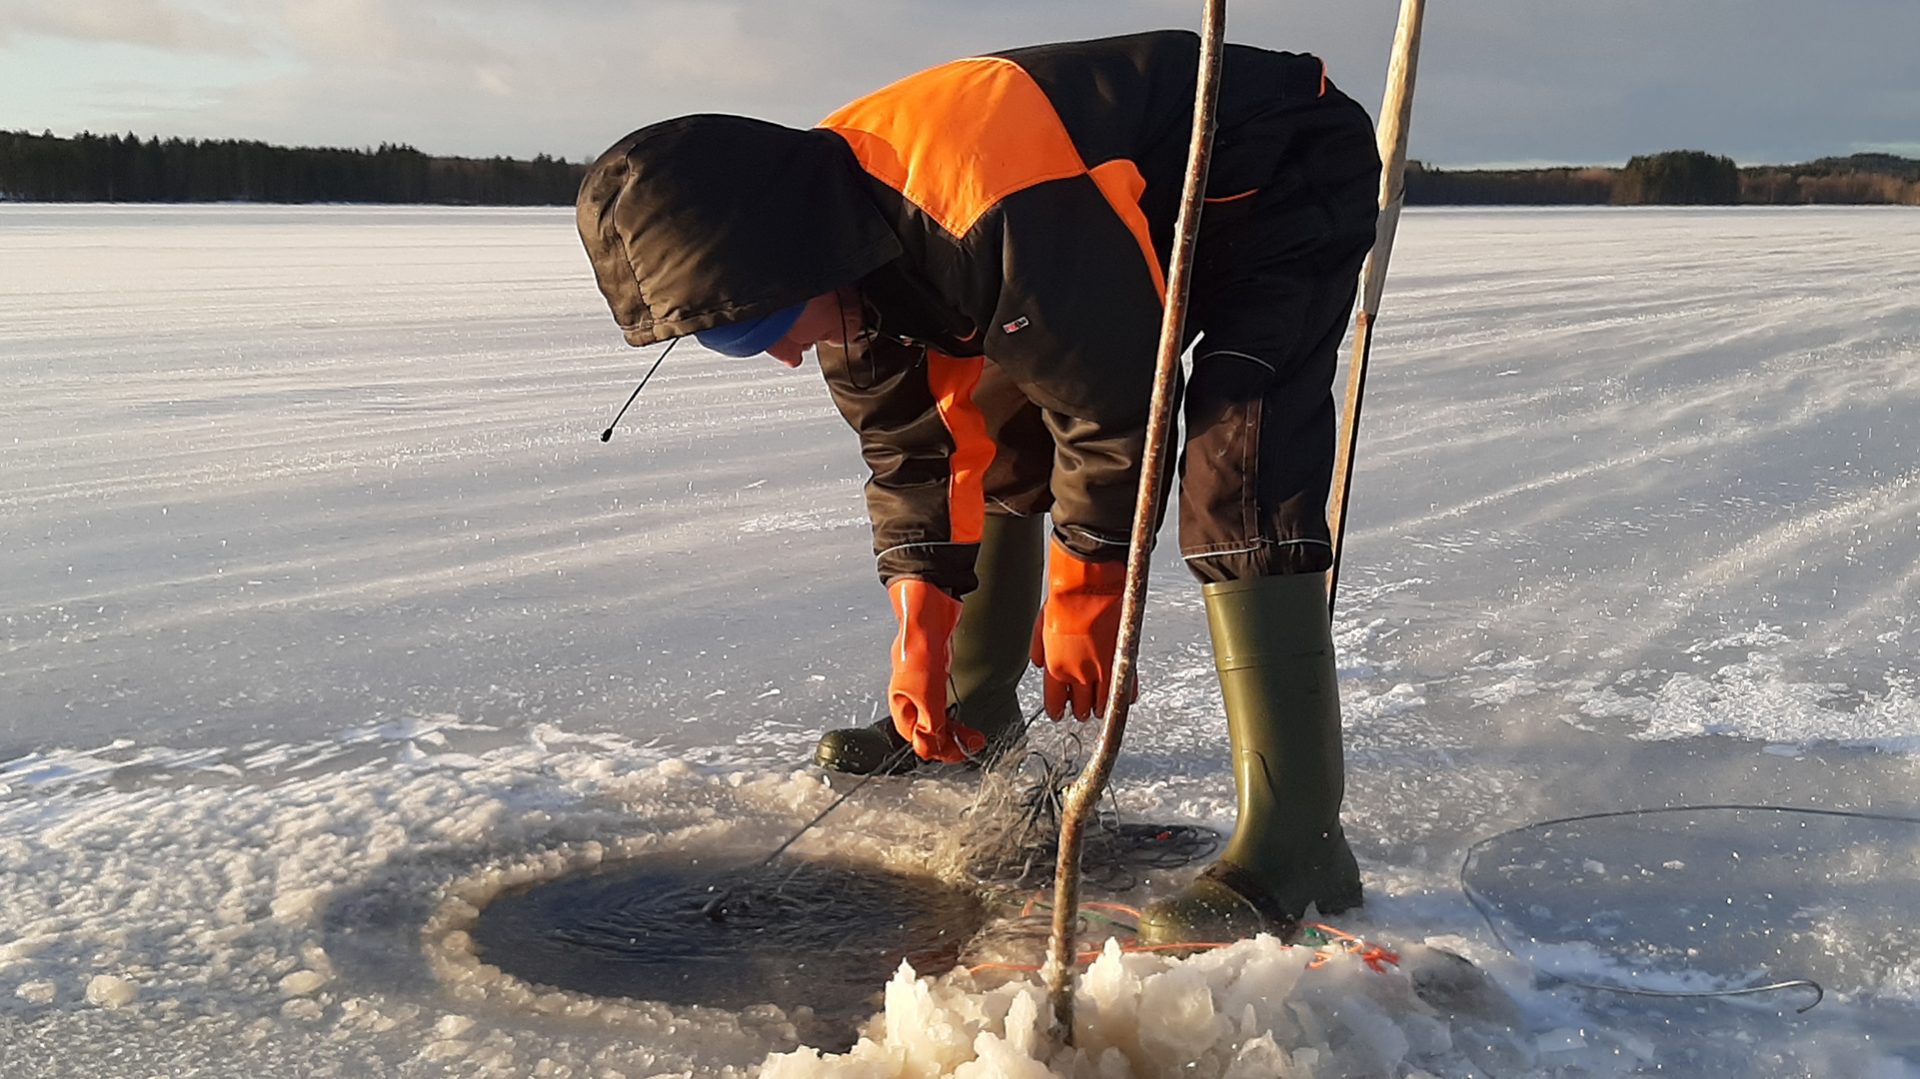 Lakeland, Bomba / Talviverkkojen kokeminen, Bomba Winter Fishing with a professional fisherman, talviaktiviteetti, Villi Pohjola / Wild Nordic Finland @wildnordicfinland